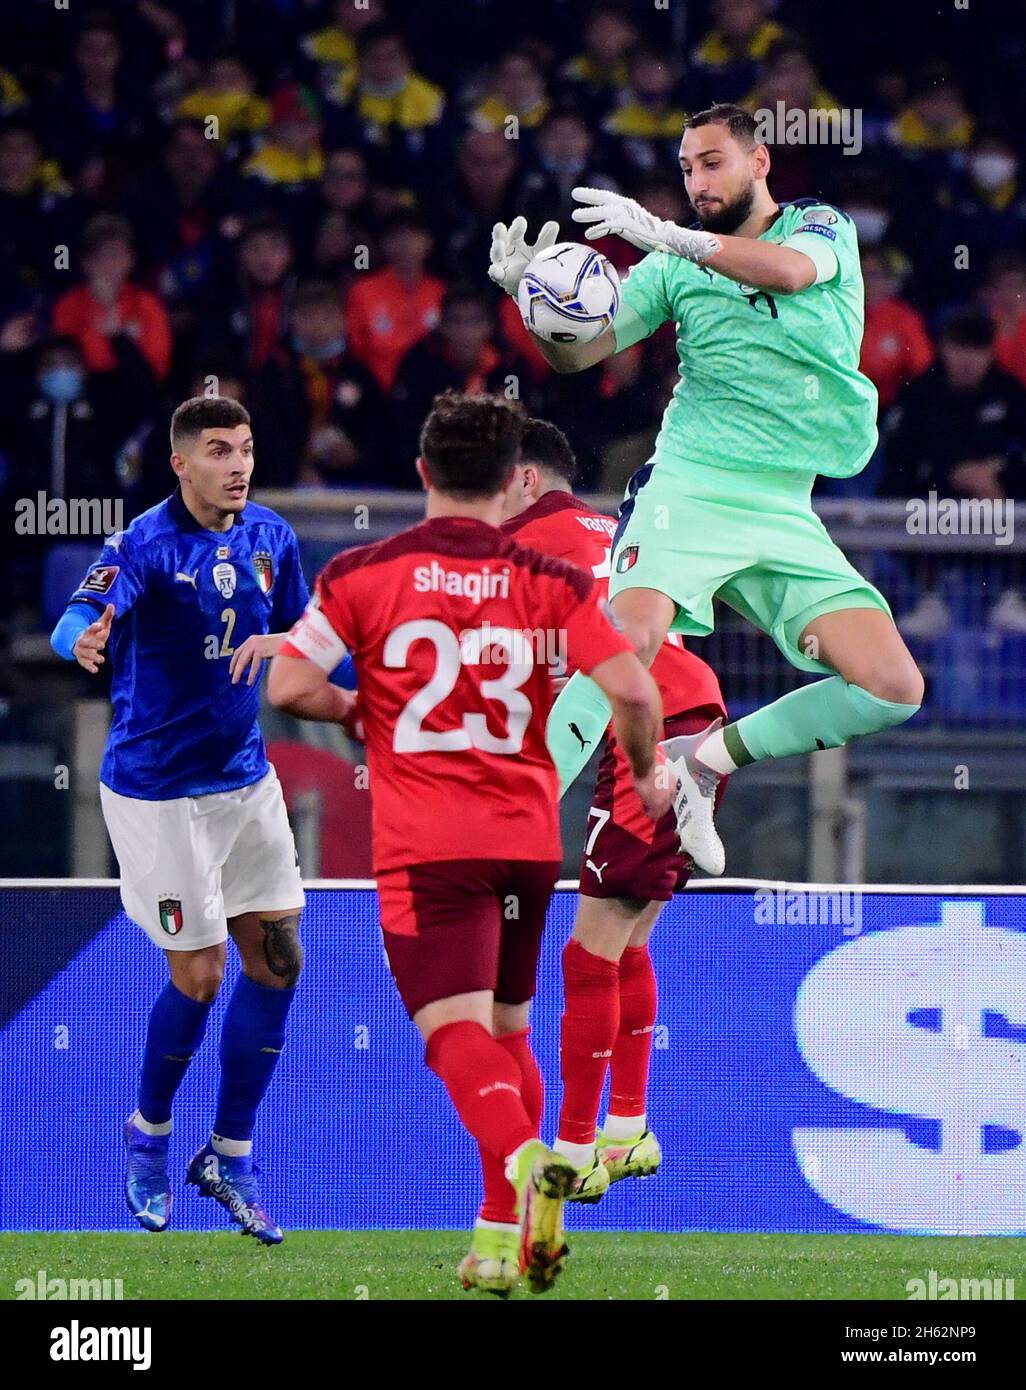 Italy vs switzerland head to head